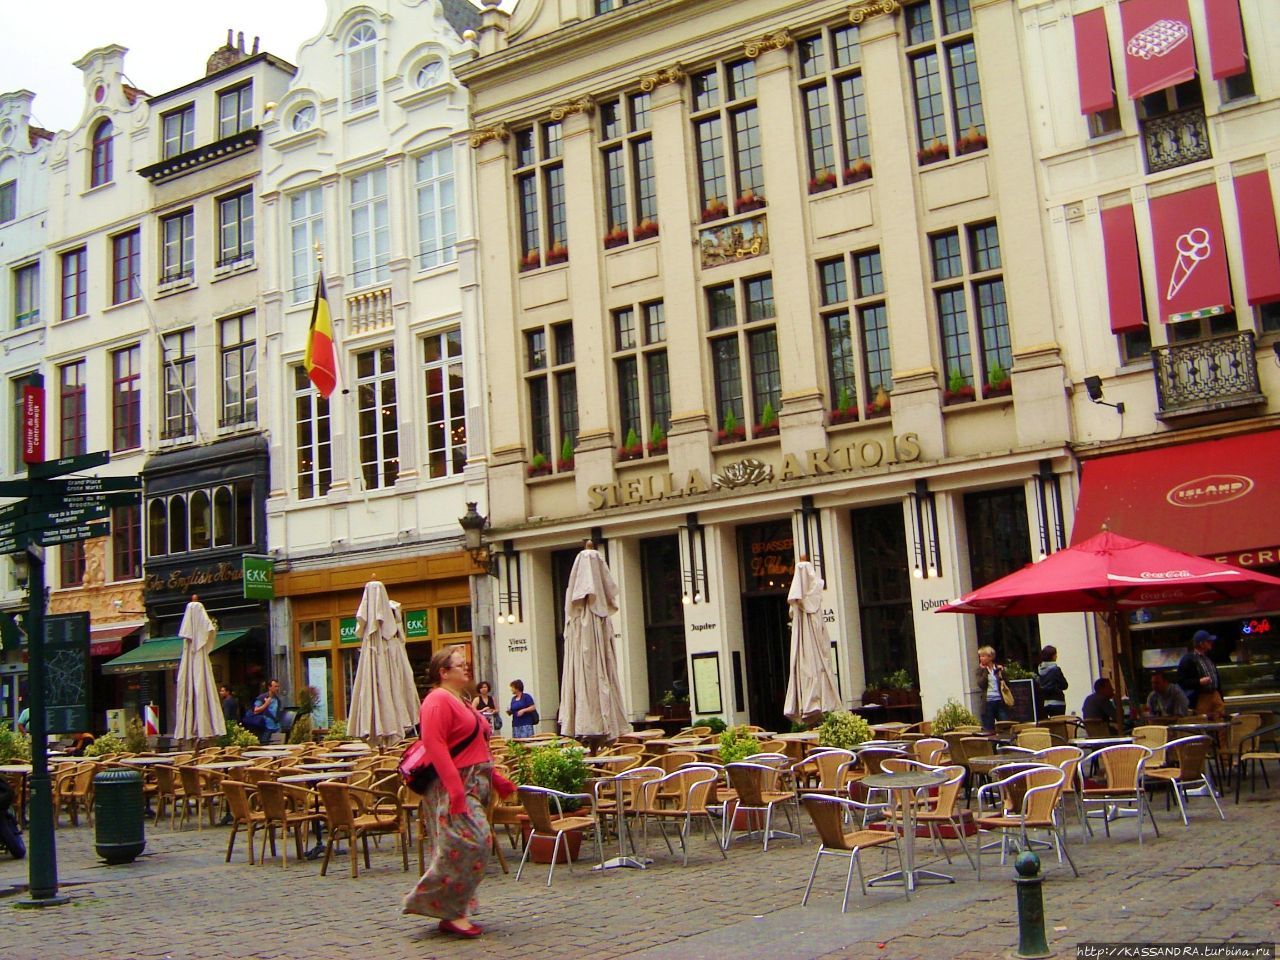 Площадь Агора Брюссель, Бельгия